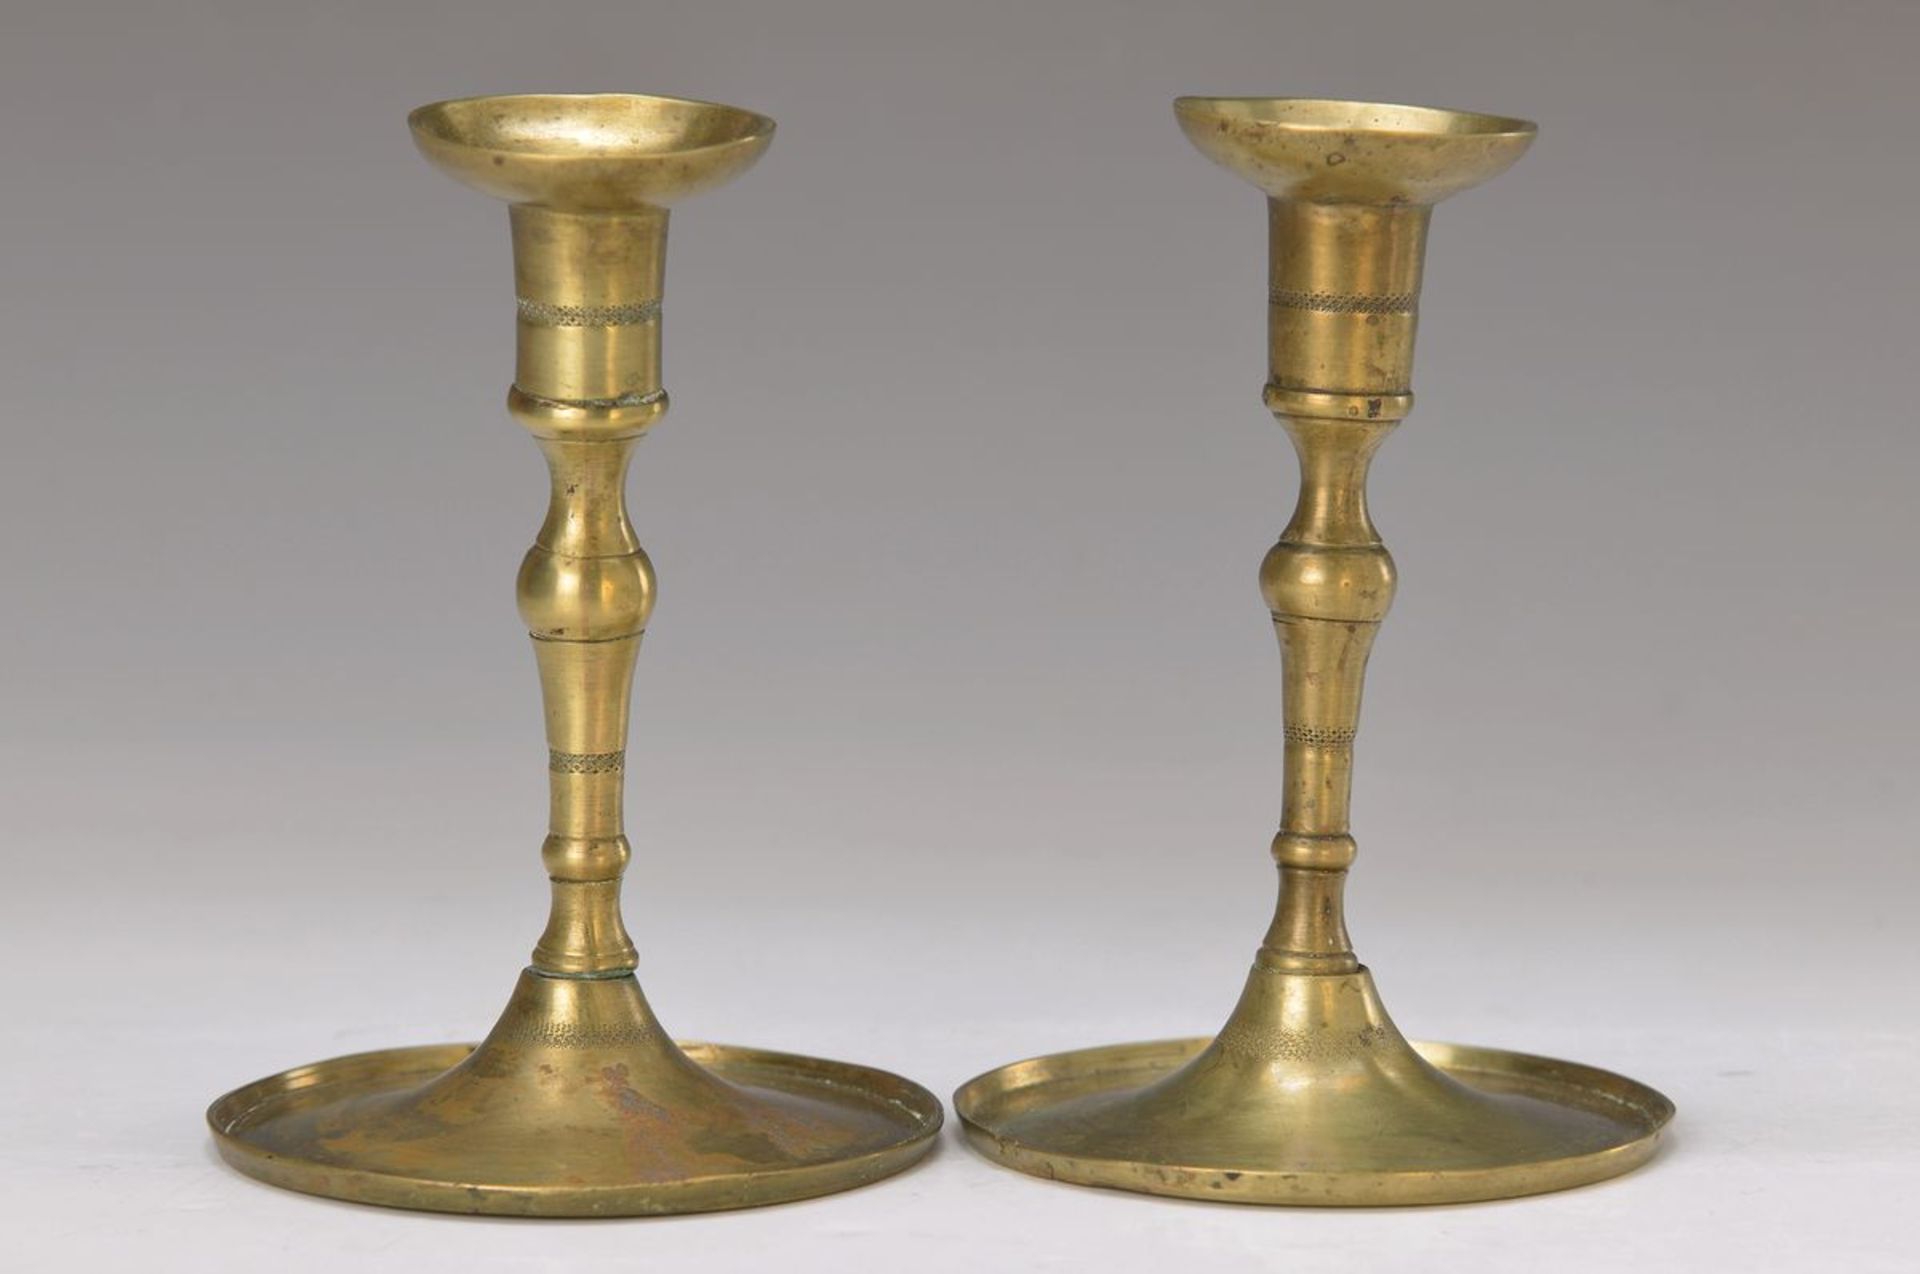 Paar Kerzenleuchter, süddeutsch, um 1730/40, Bronze, weite Schraubung, umlaufender punzierter